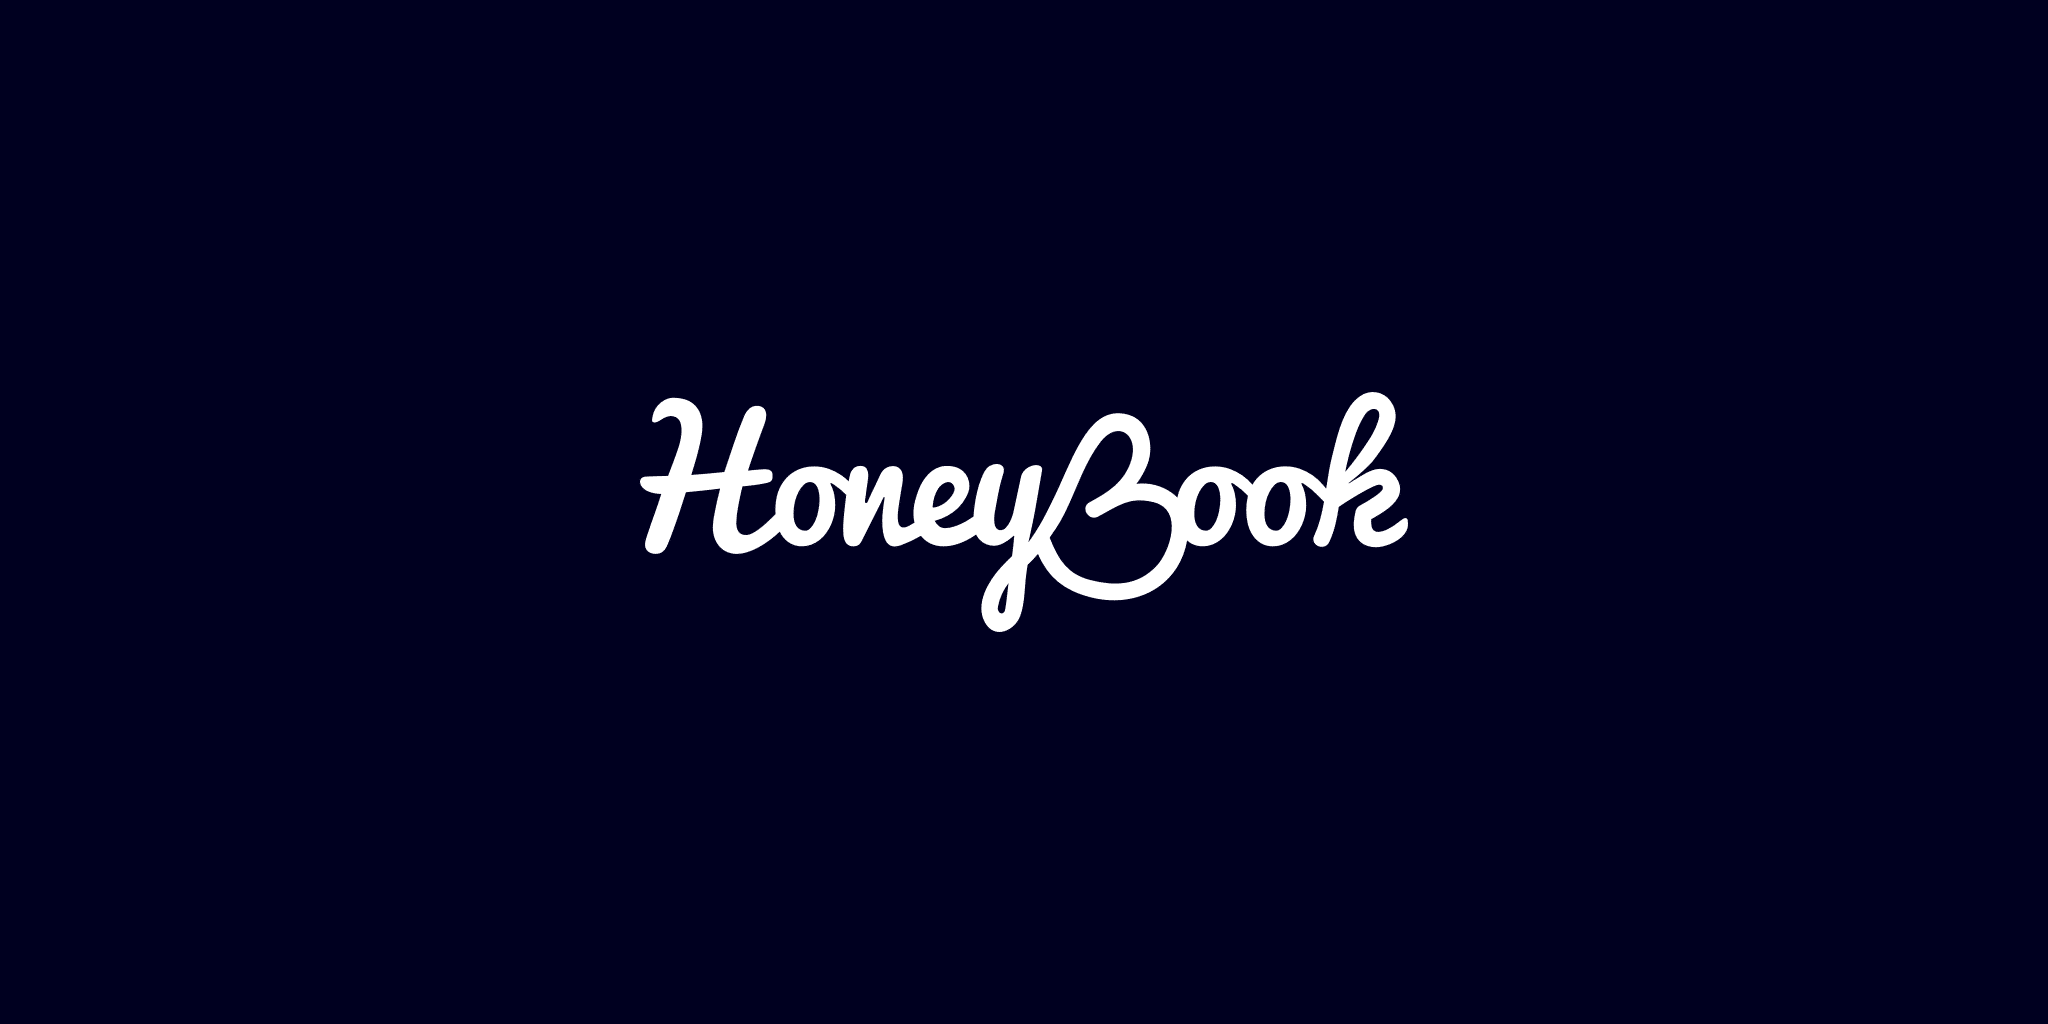 HoneyBook Full Logo White on Dark Blue